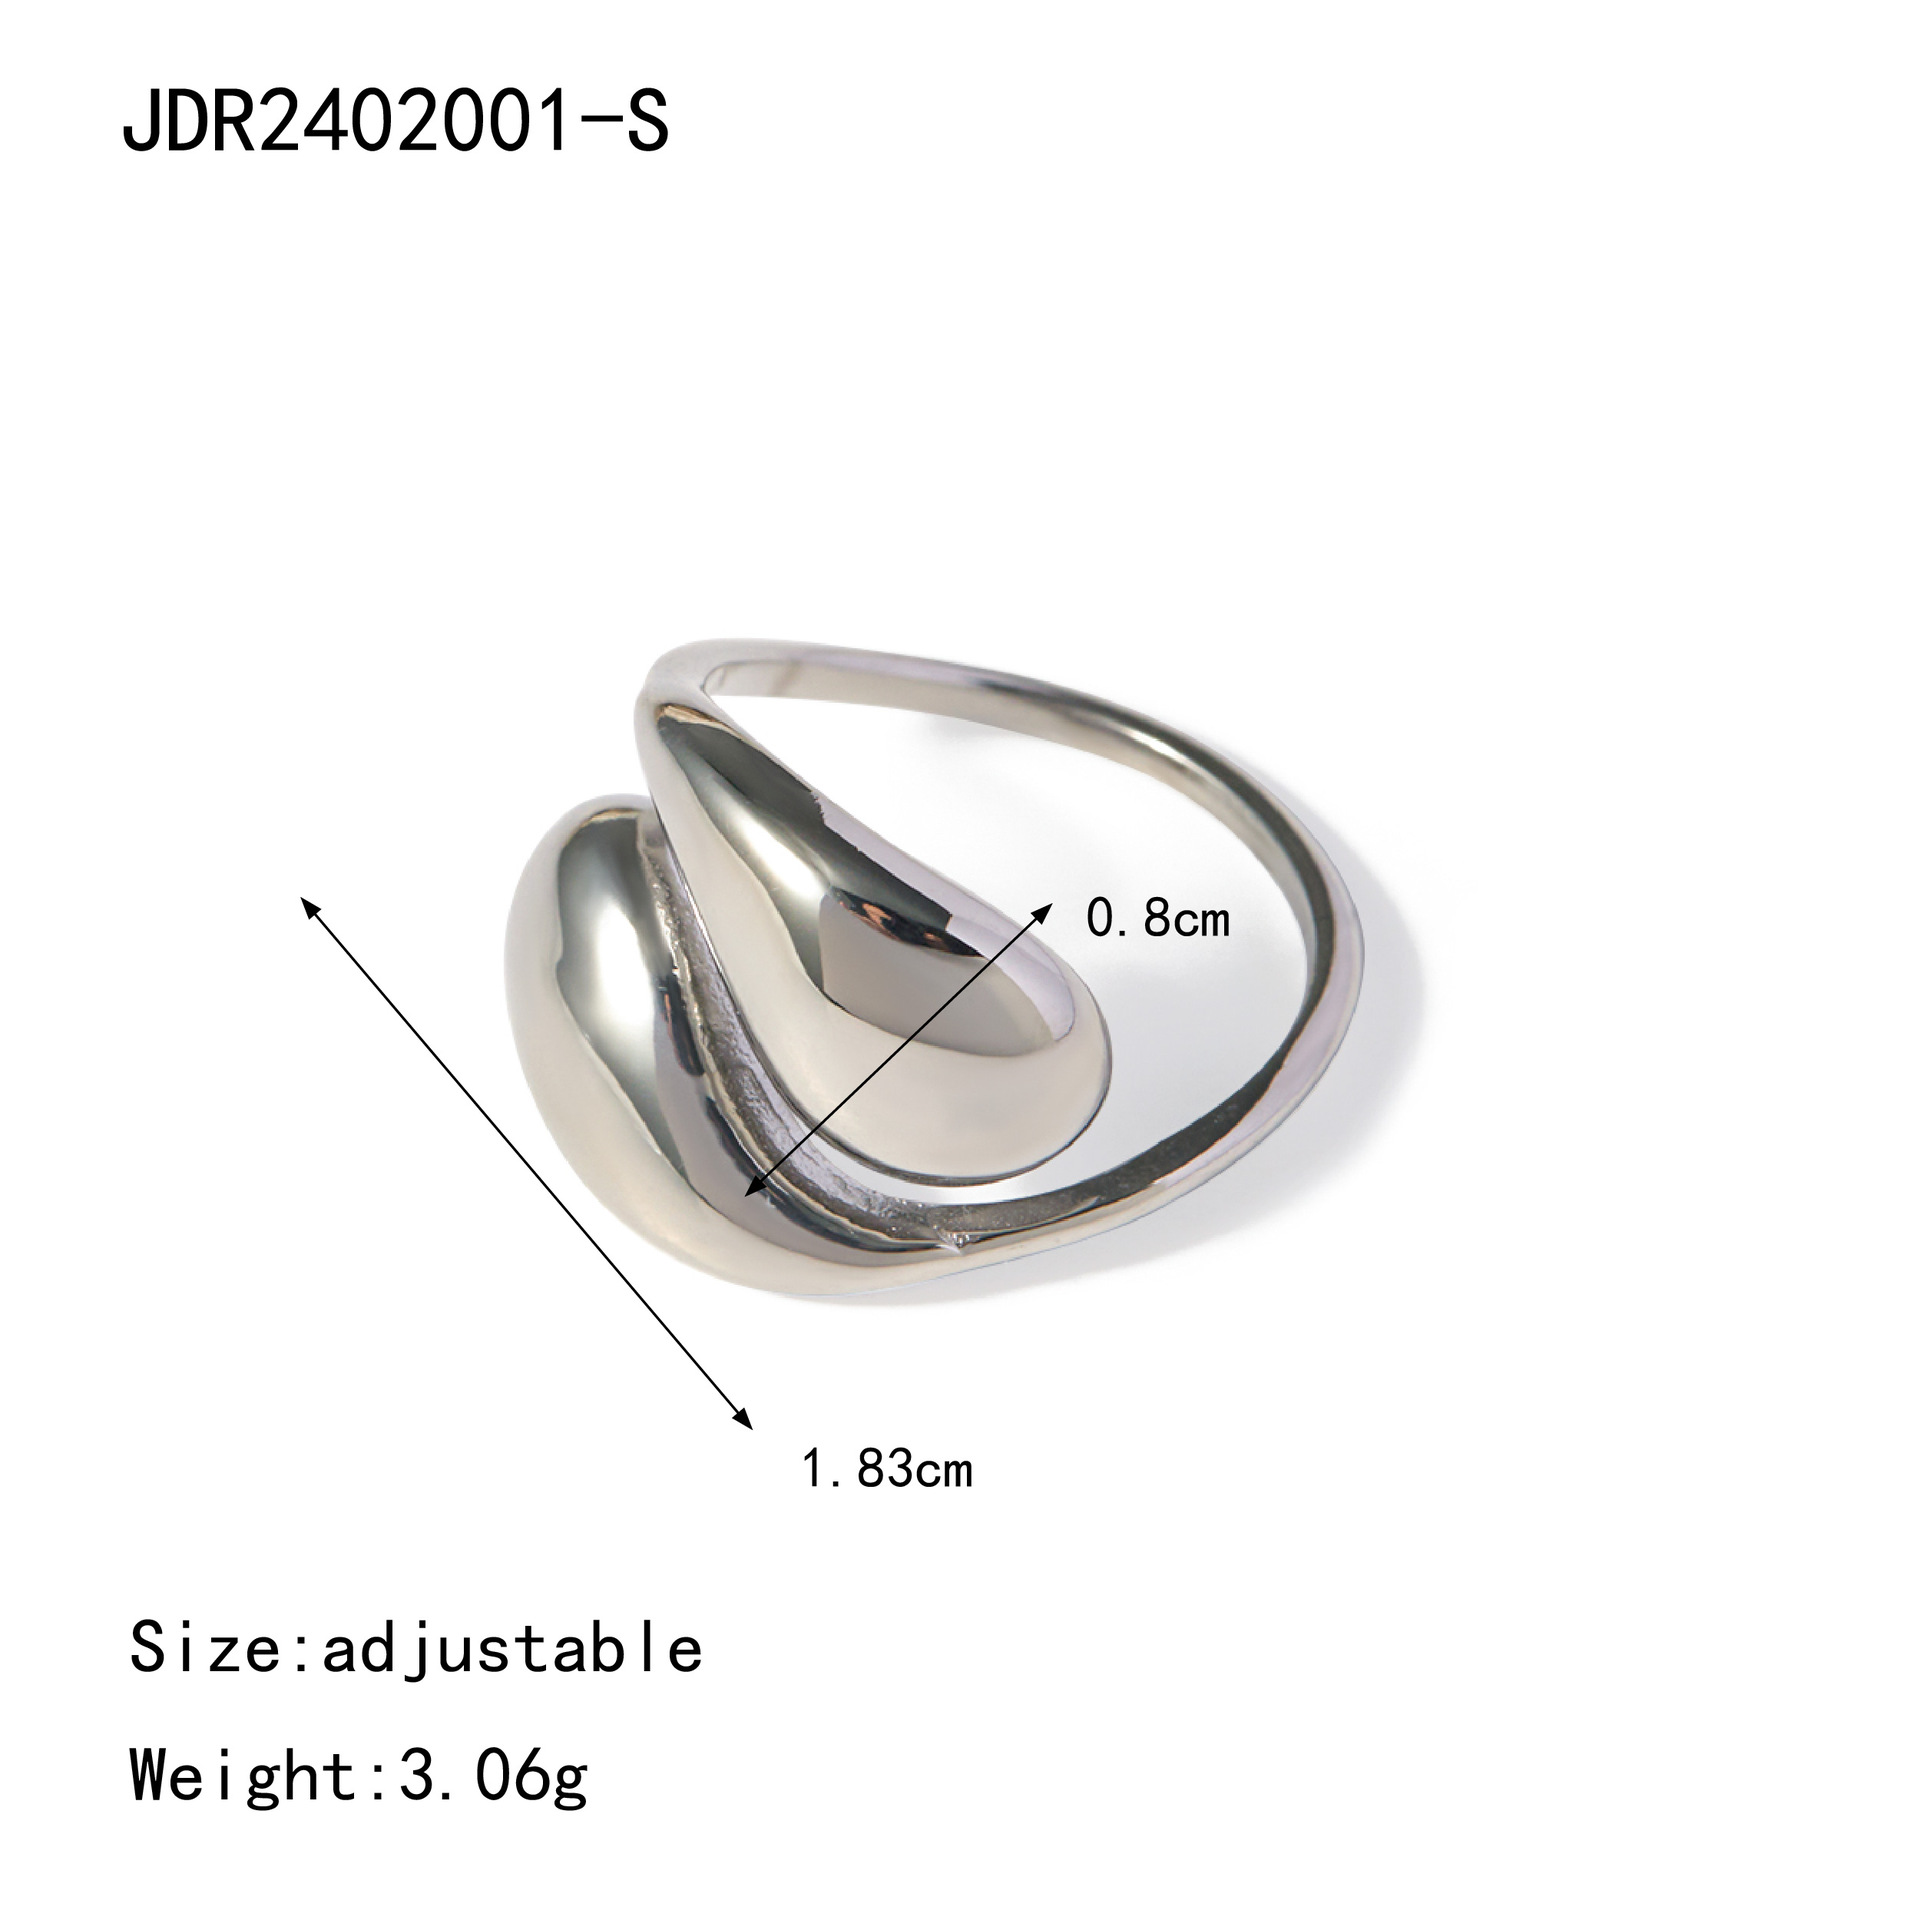 JDR2402001-S